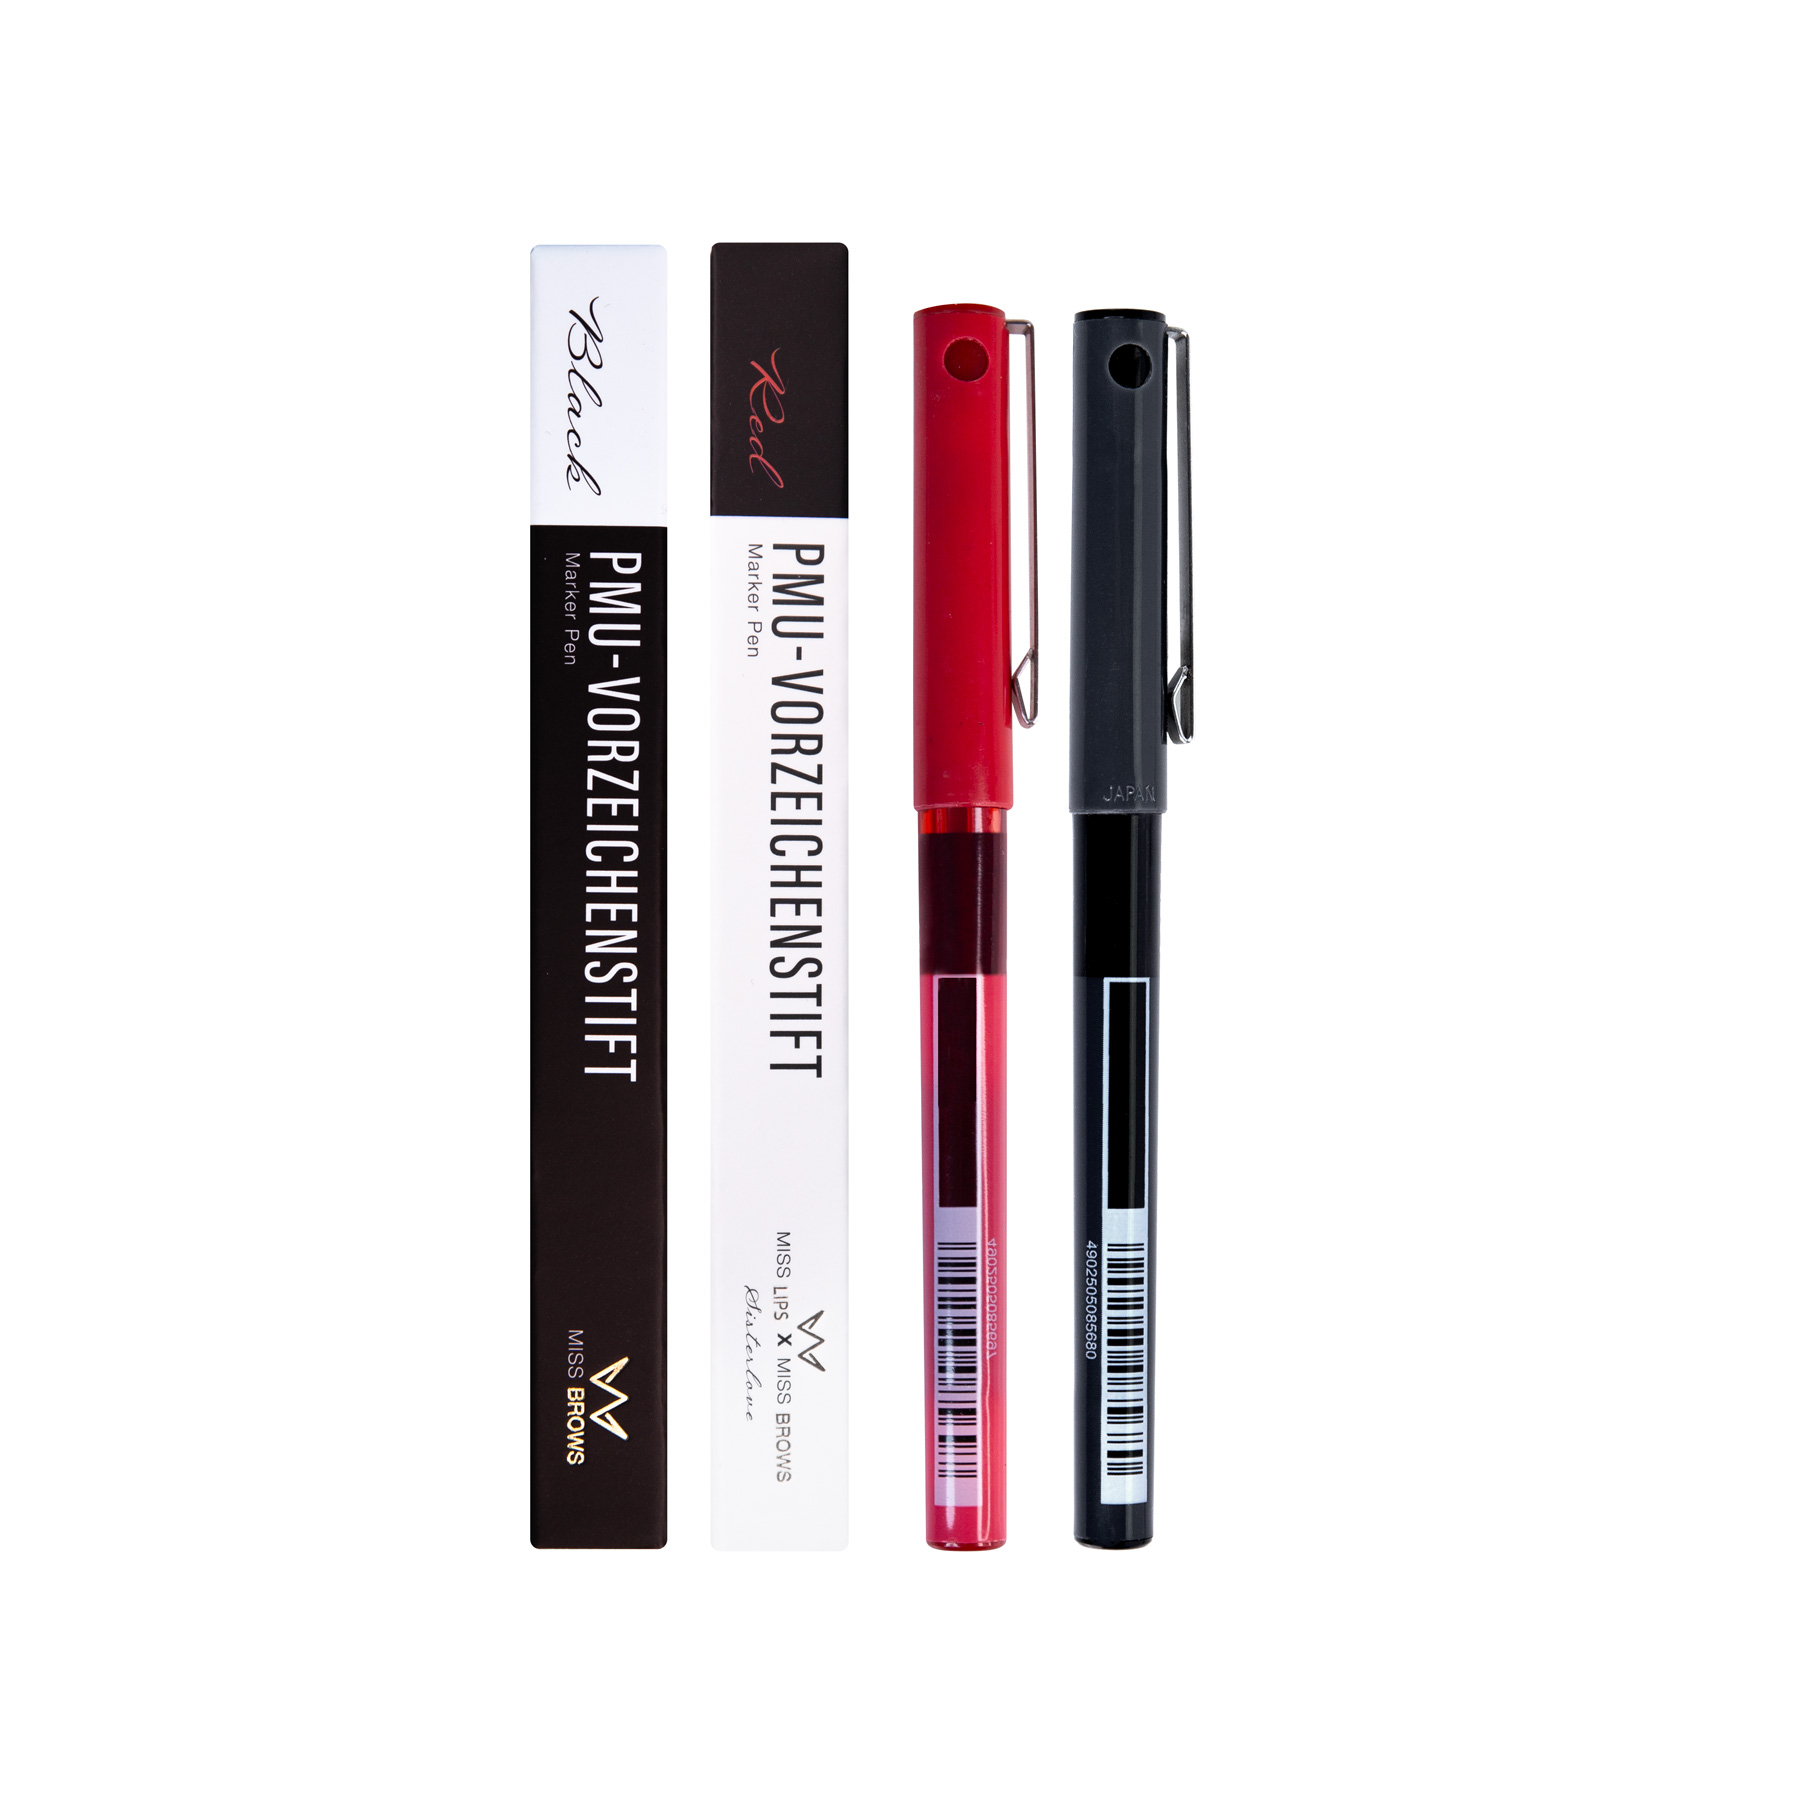 PMU - Vorzeichenstift | Marker Pen | Schwarz oder Rot